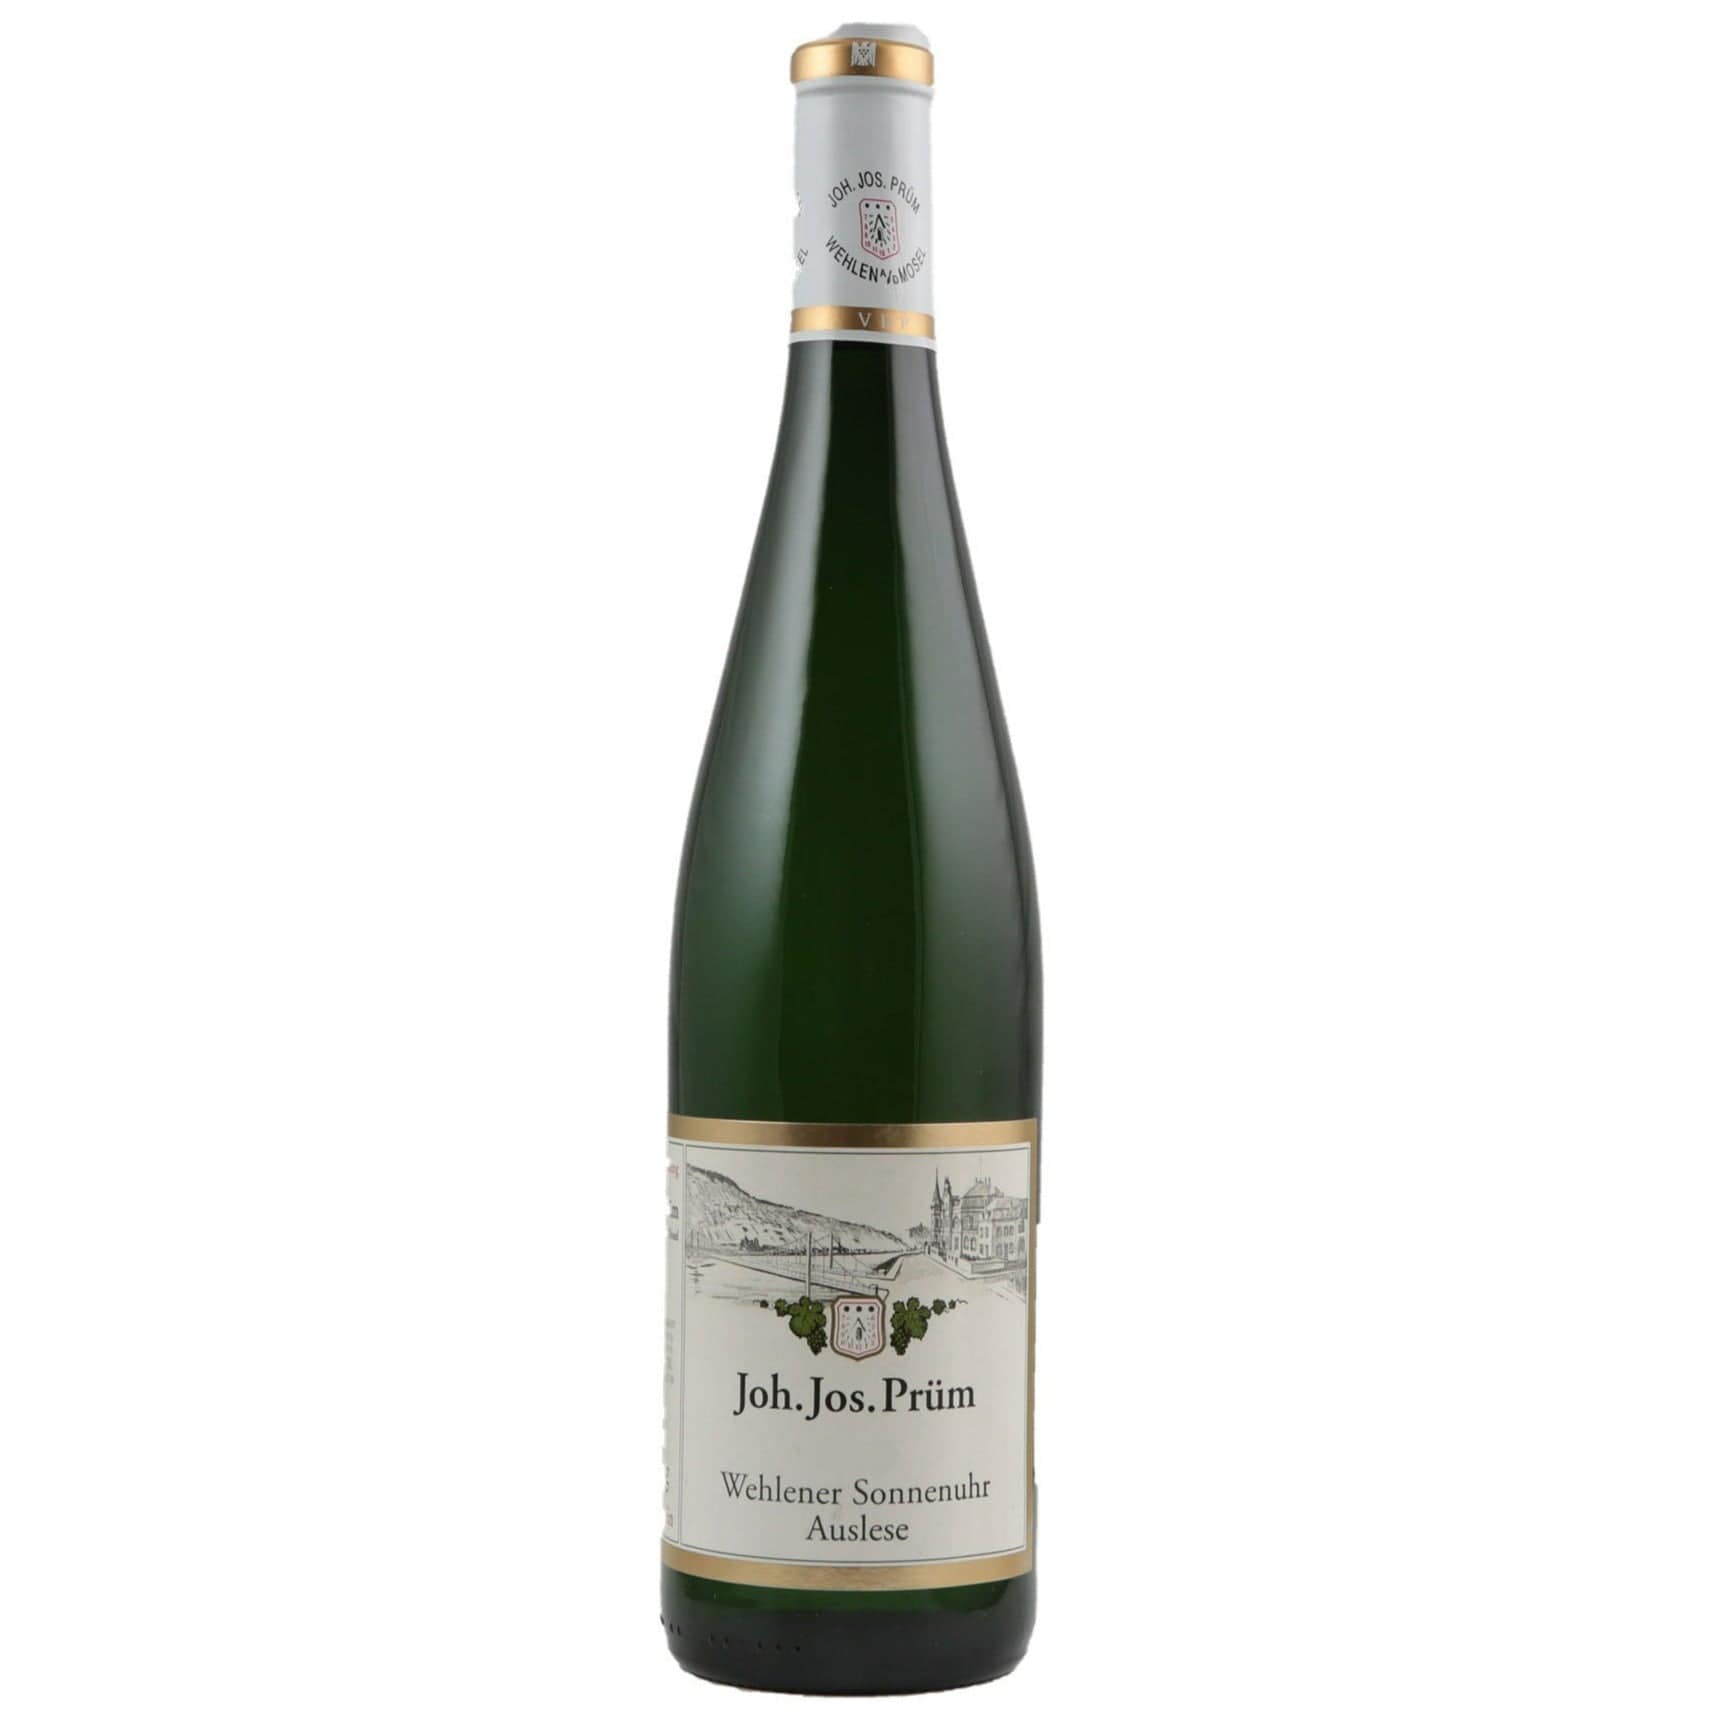 Single bottle of Sweet White wine JJ Prum, Wehlener Sonnenuhr Riesling Auslese, Wehlen, 2005 100% Riesling